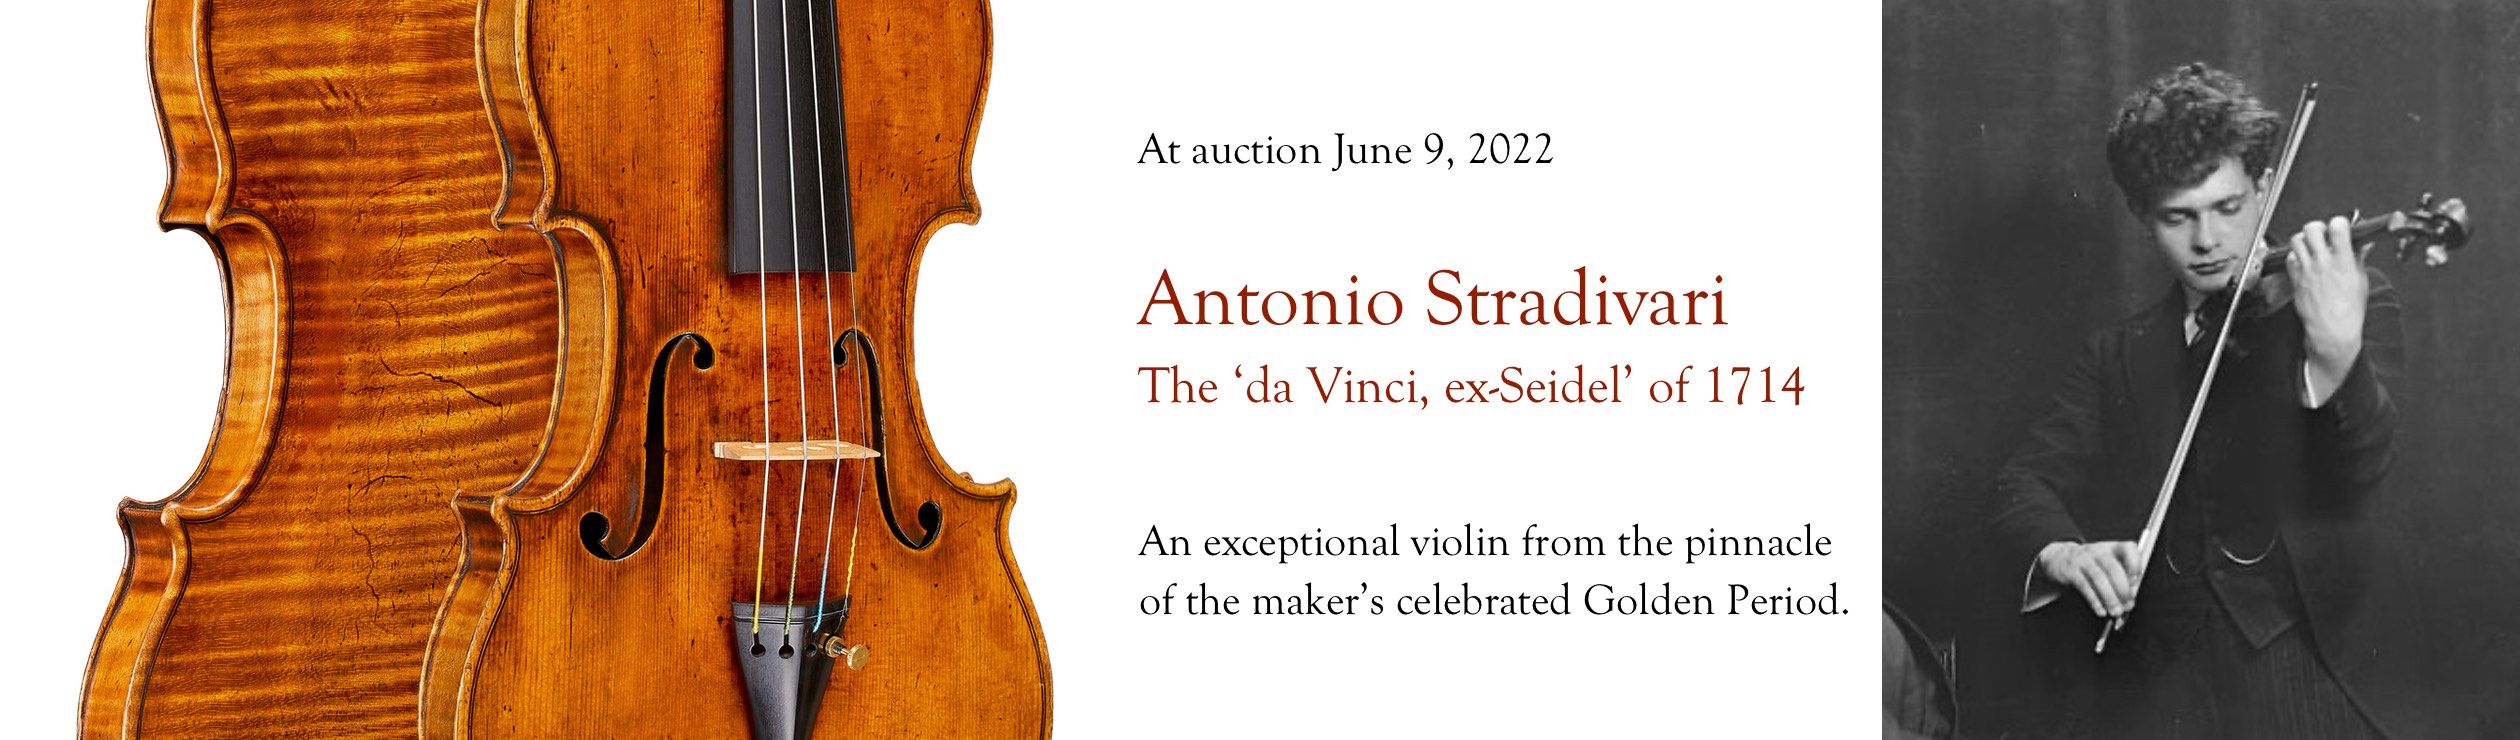 The 1714 'da Vinci, ex-Seidel' Stradivari